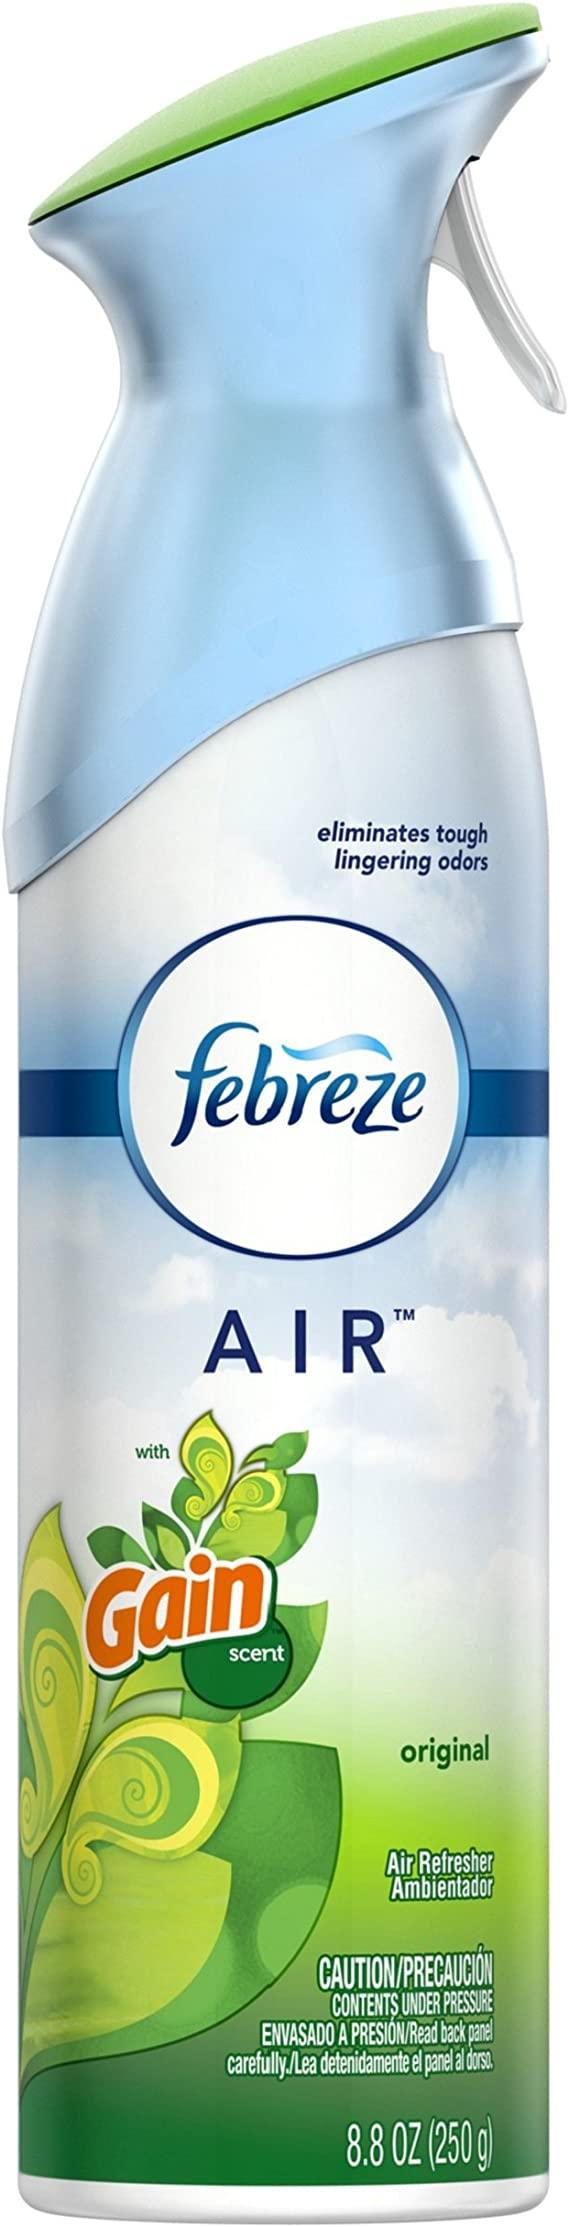 Febreze Air Freshner - Morning & Dew (250g)